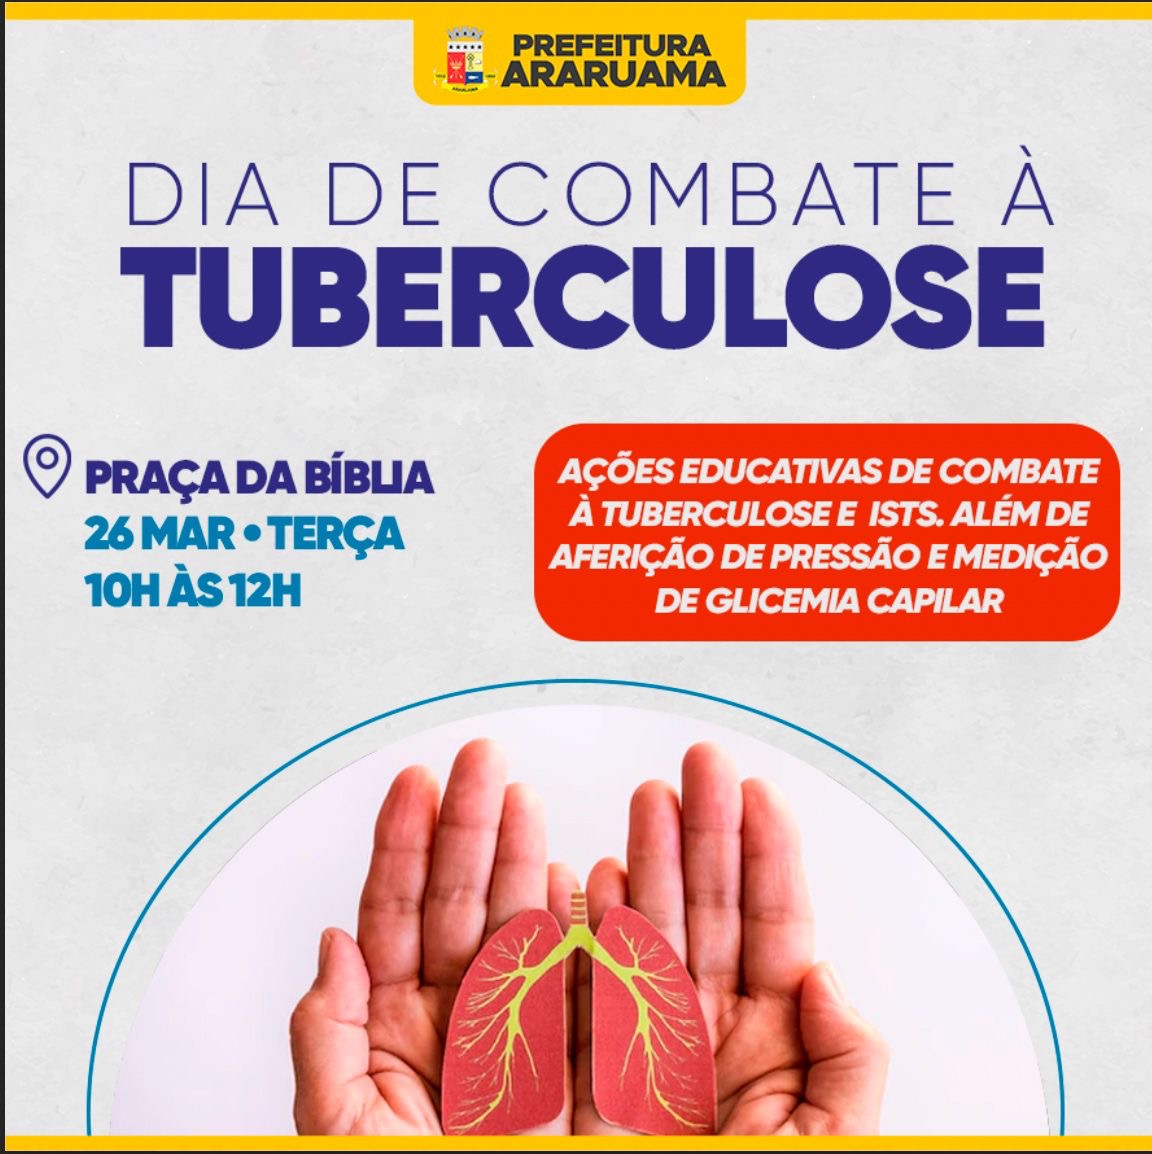 Prefeitura de Araruama vai realizar o Dia de Combate à Tuberculose, na Praça da Bíblia